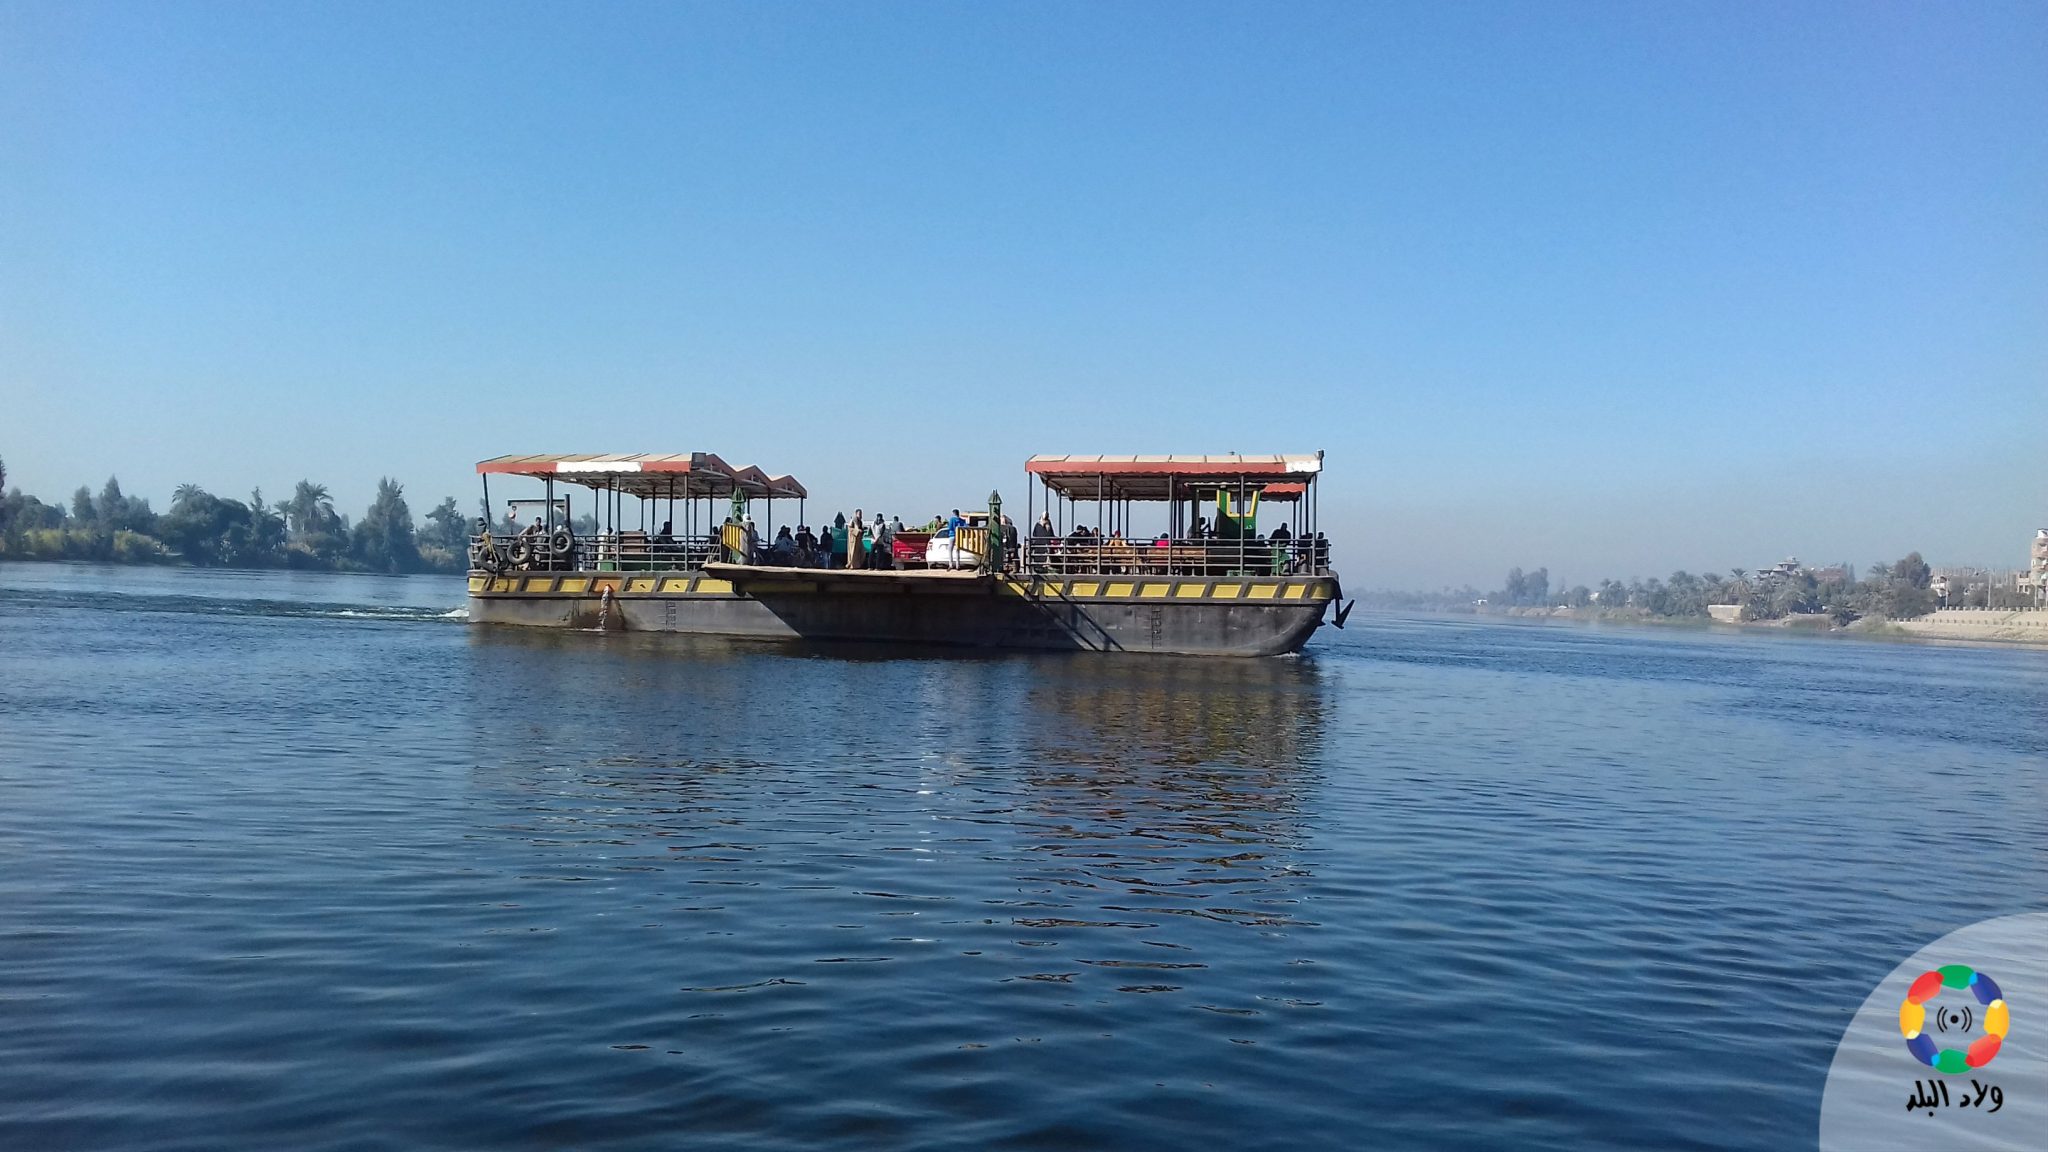   إنقاذ 10 أشخاص قبل غرقهم فى مياه النيل